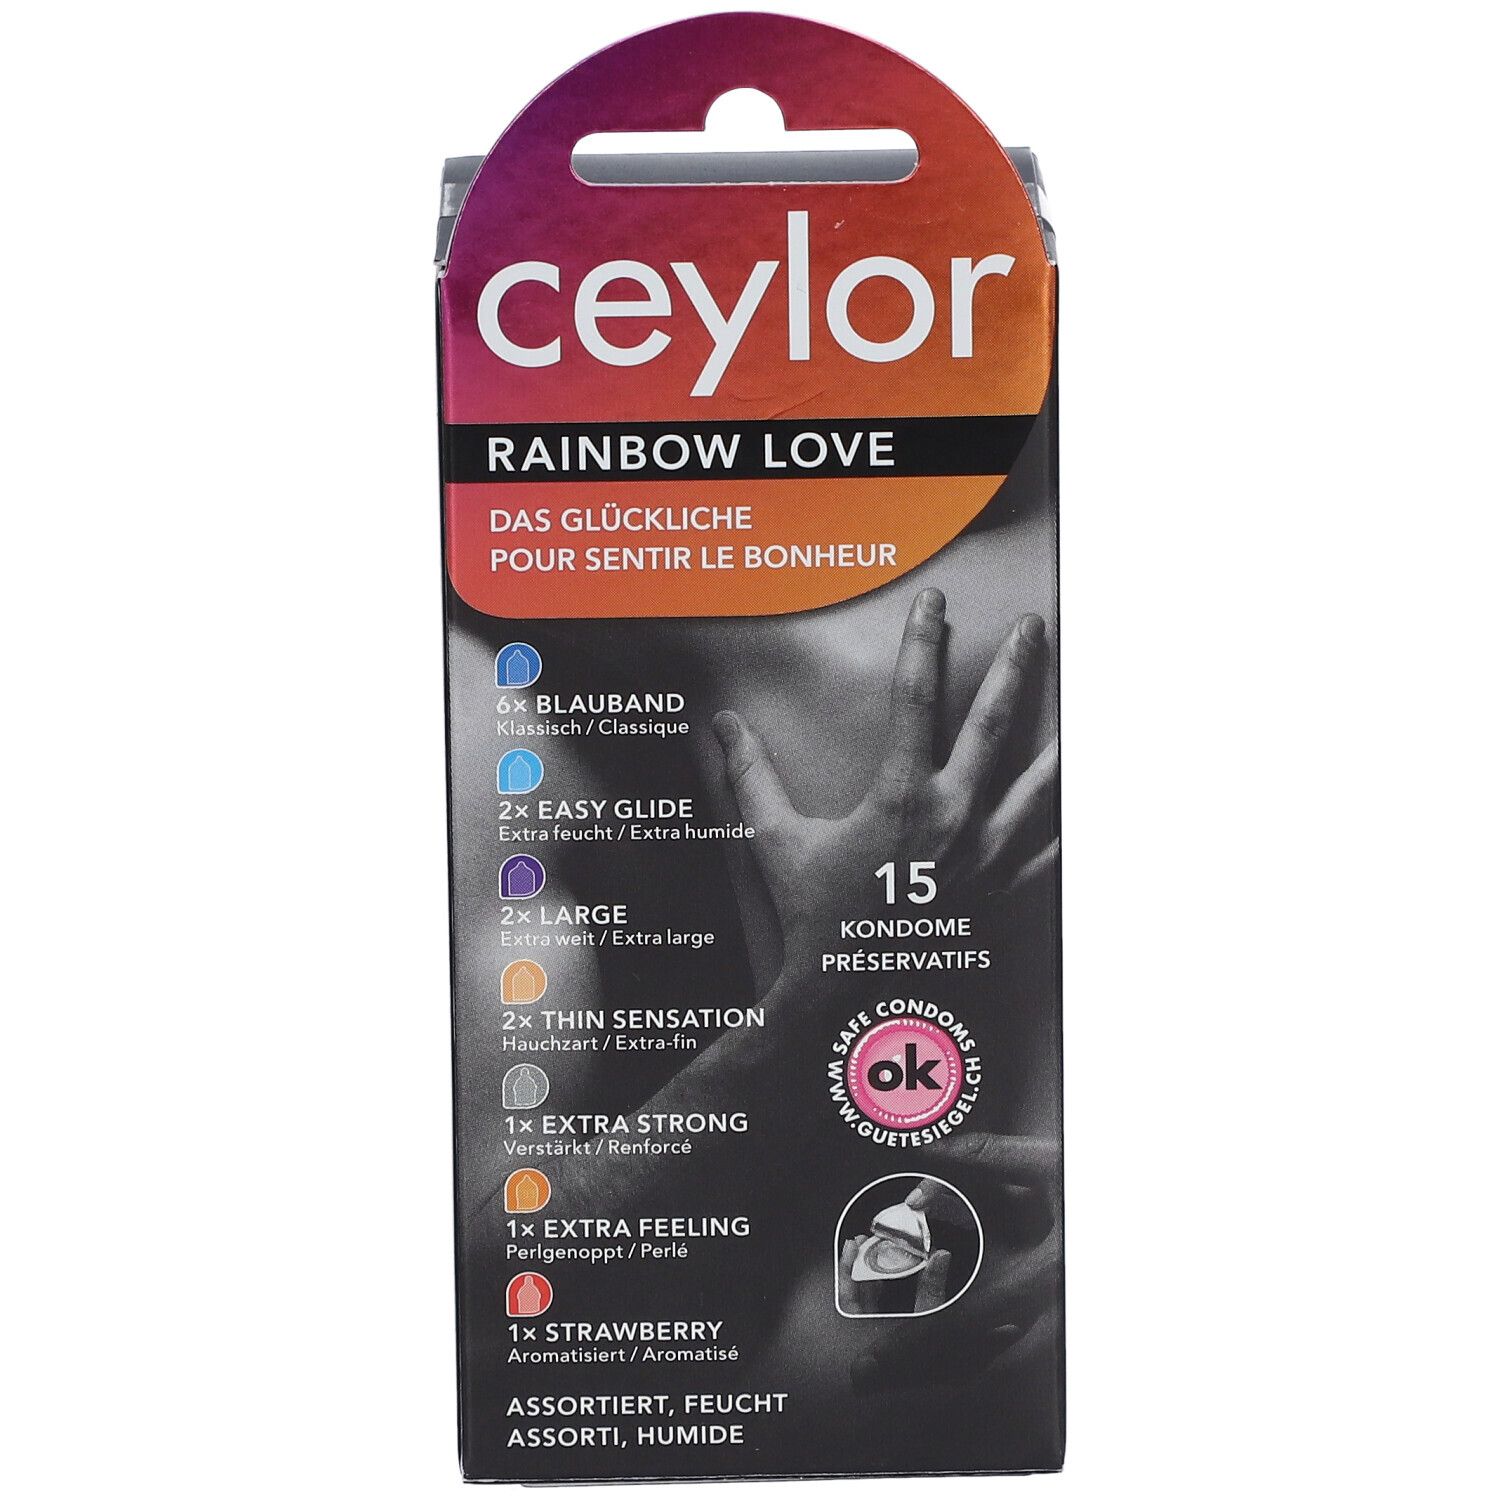 Ceylor Rainbow Love